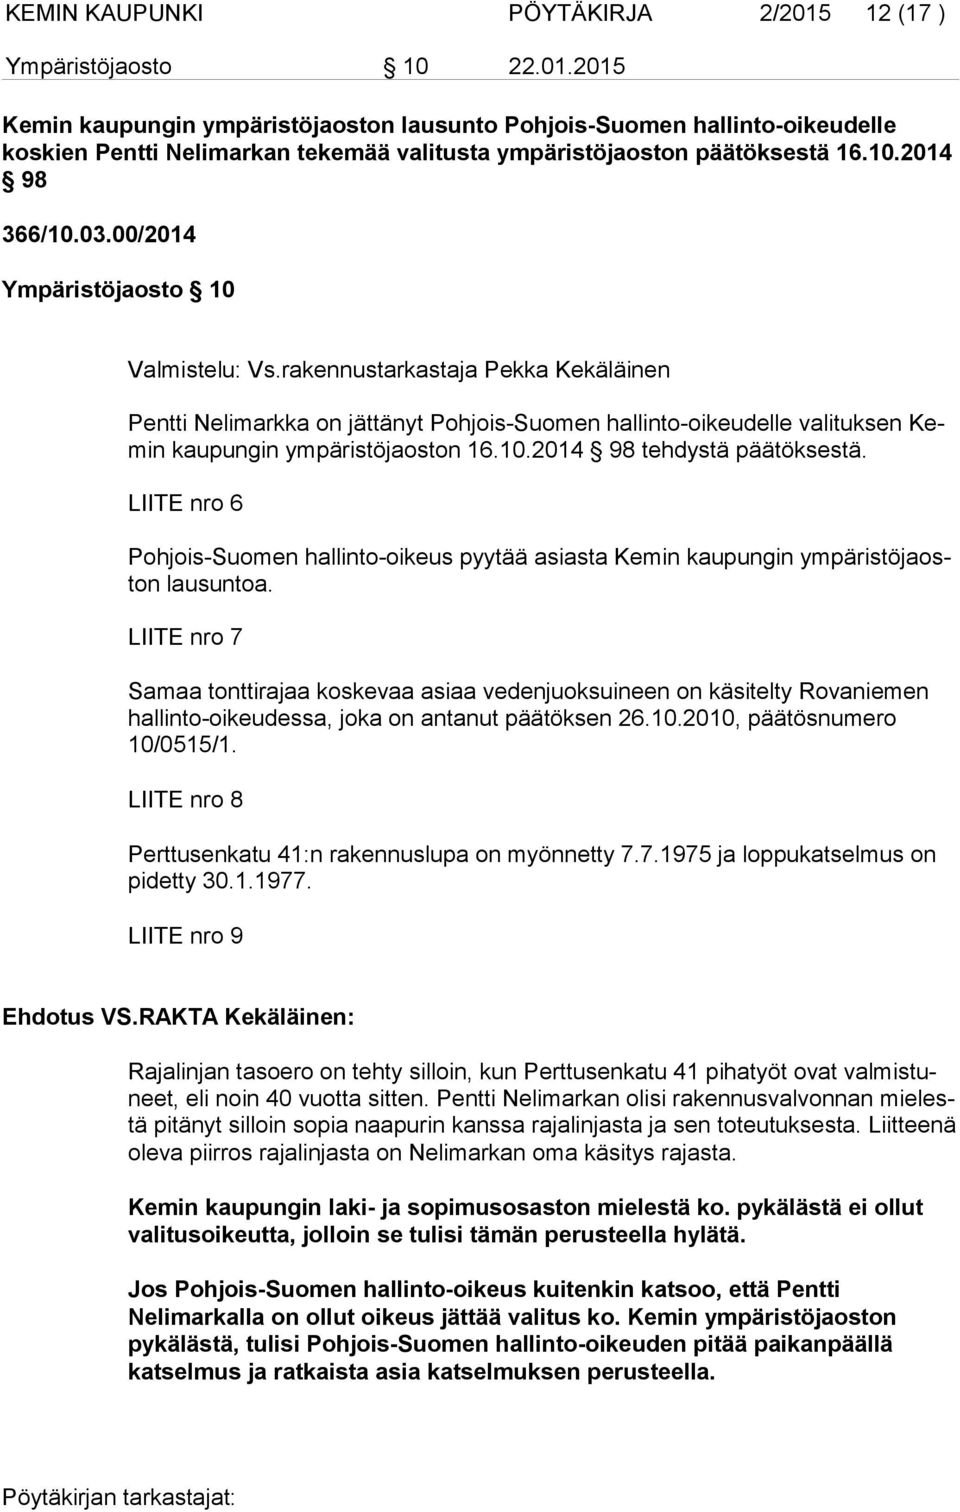 rakennustarkastaja Pekka Kekäläinen Pentti Nelimarkka on jättänyt Pohjois-Suomen hallinto-oikeudelle valituksen Kemin kaupungin ympäristöjaoston 16.10.2014 98 tehdystä päätöksestä.